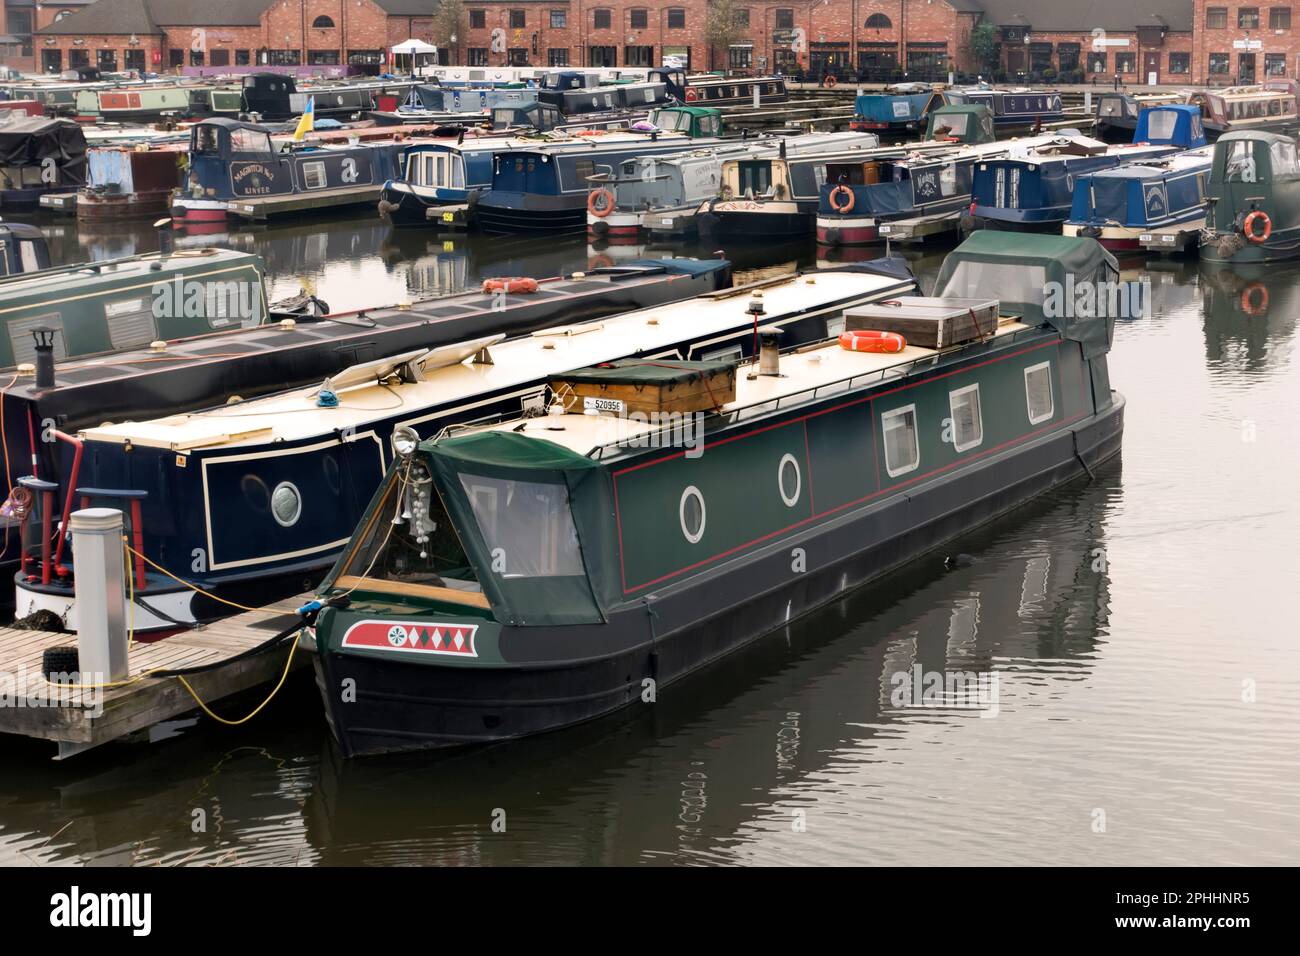 Schmalboote liegen an der Barton Marina, Trent und Mersey Canal, Staffordshire, England, Großbritannien Stockfoto